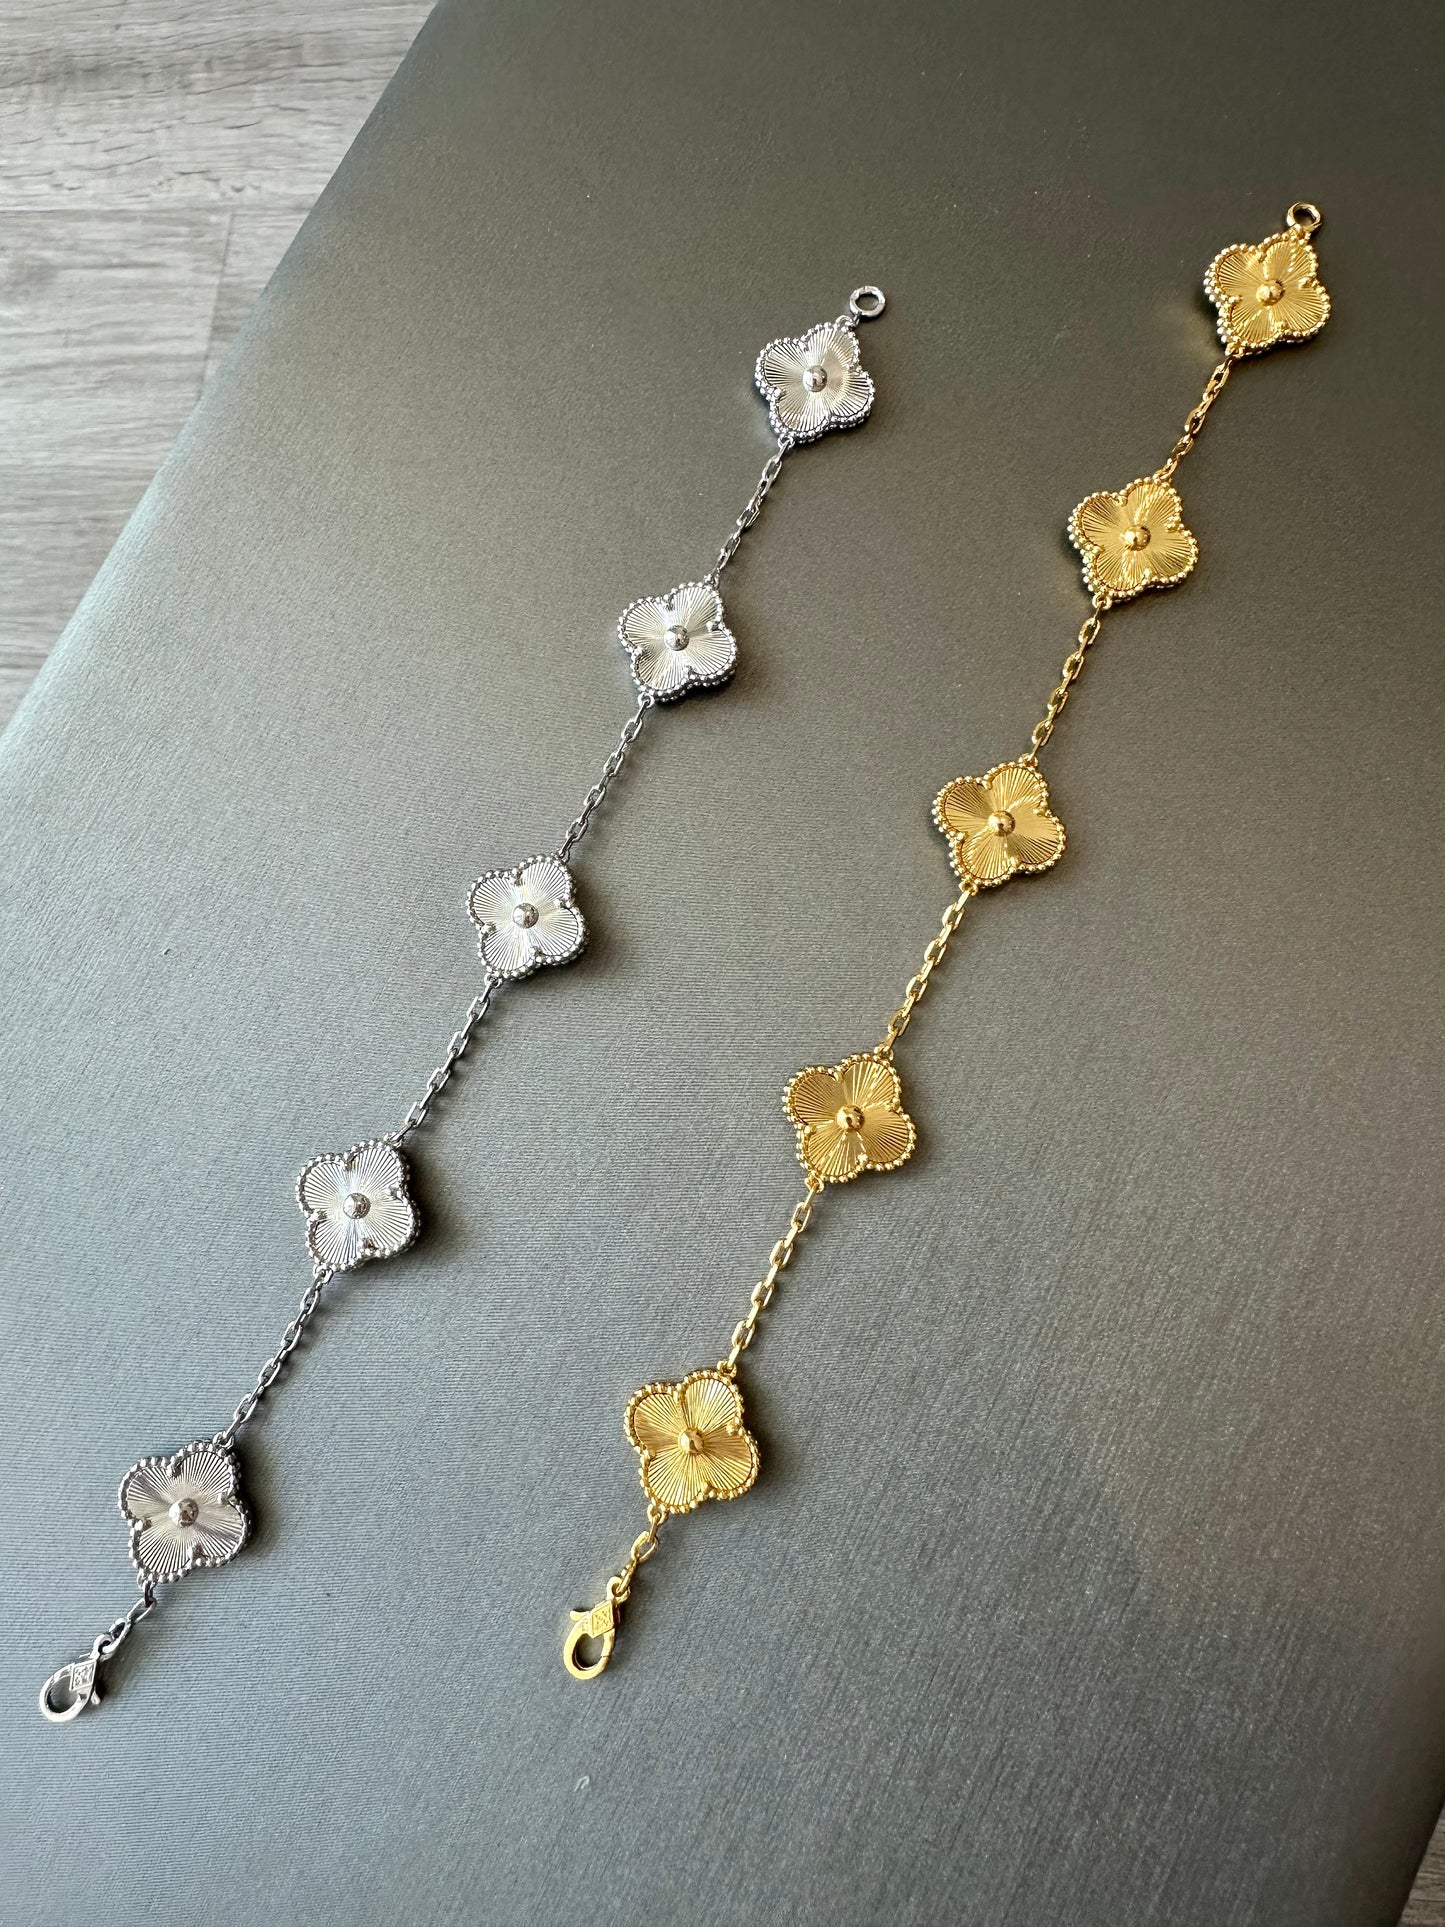 High Quality 18k Rose Gold Plated 5 Clover Link Bracelet 